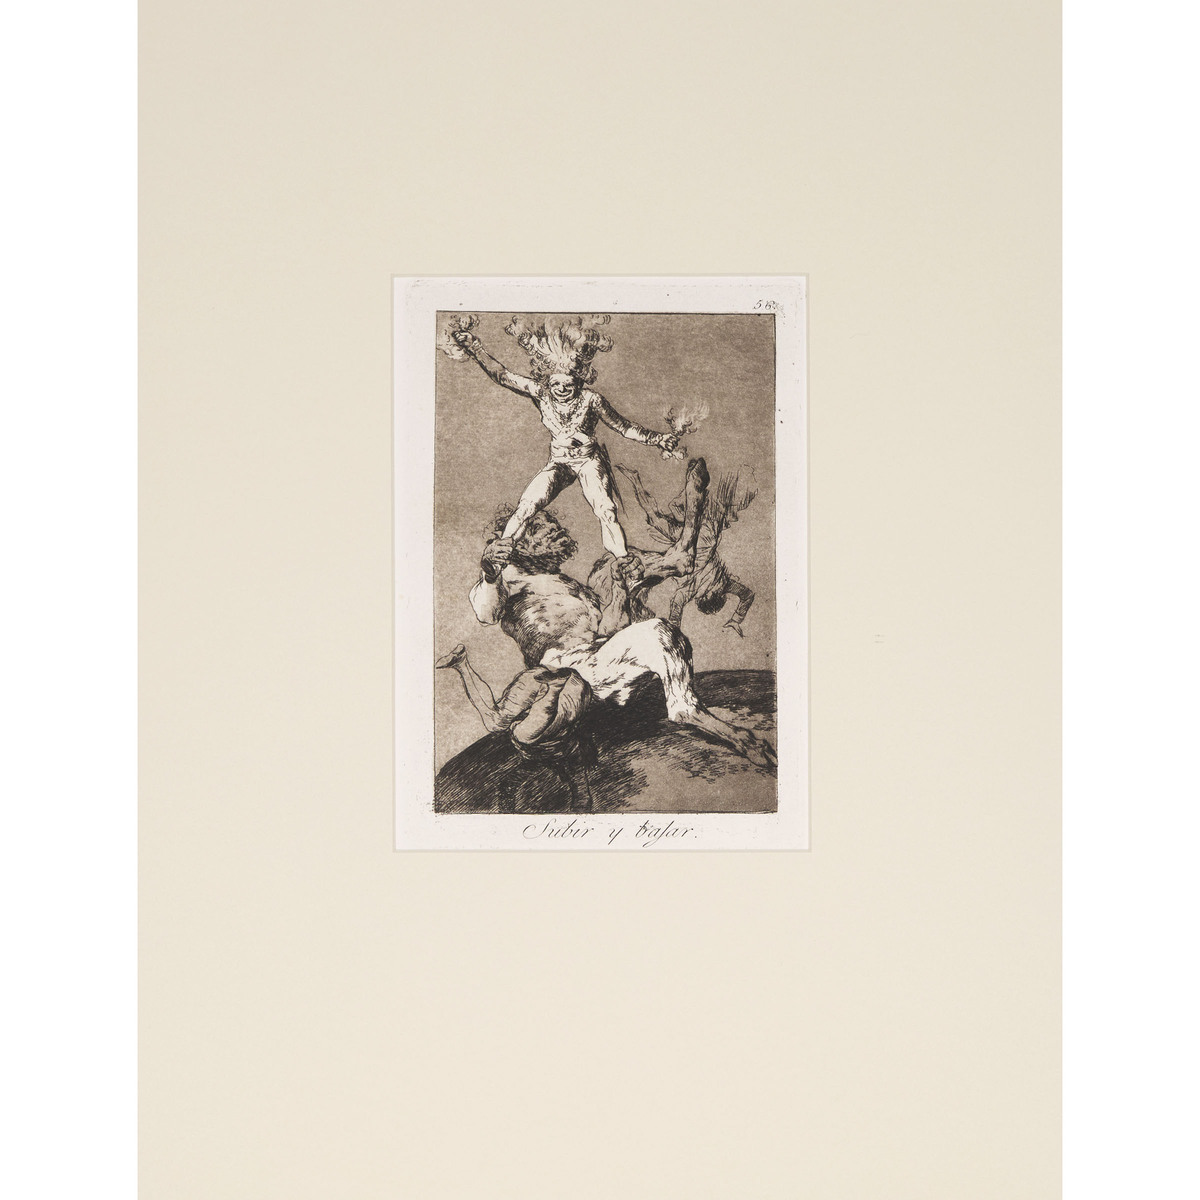 Francisco José de Goya y Lucientes (1746-1828), LOS CAPRICHOS, CA. 1855-1878 [D. 40-111; H. 38-109], - Image 35 of 55